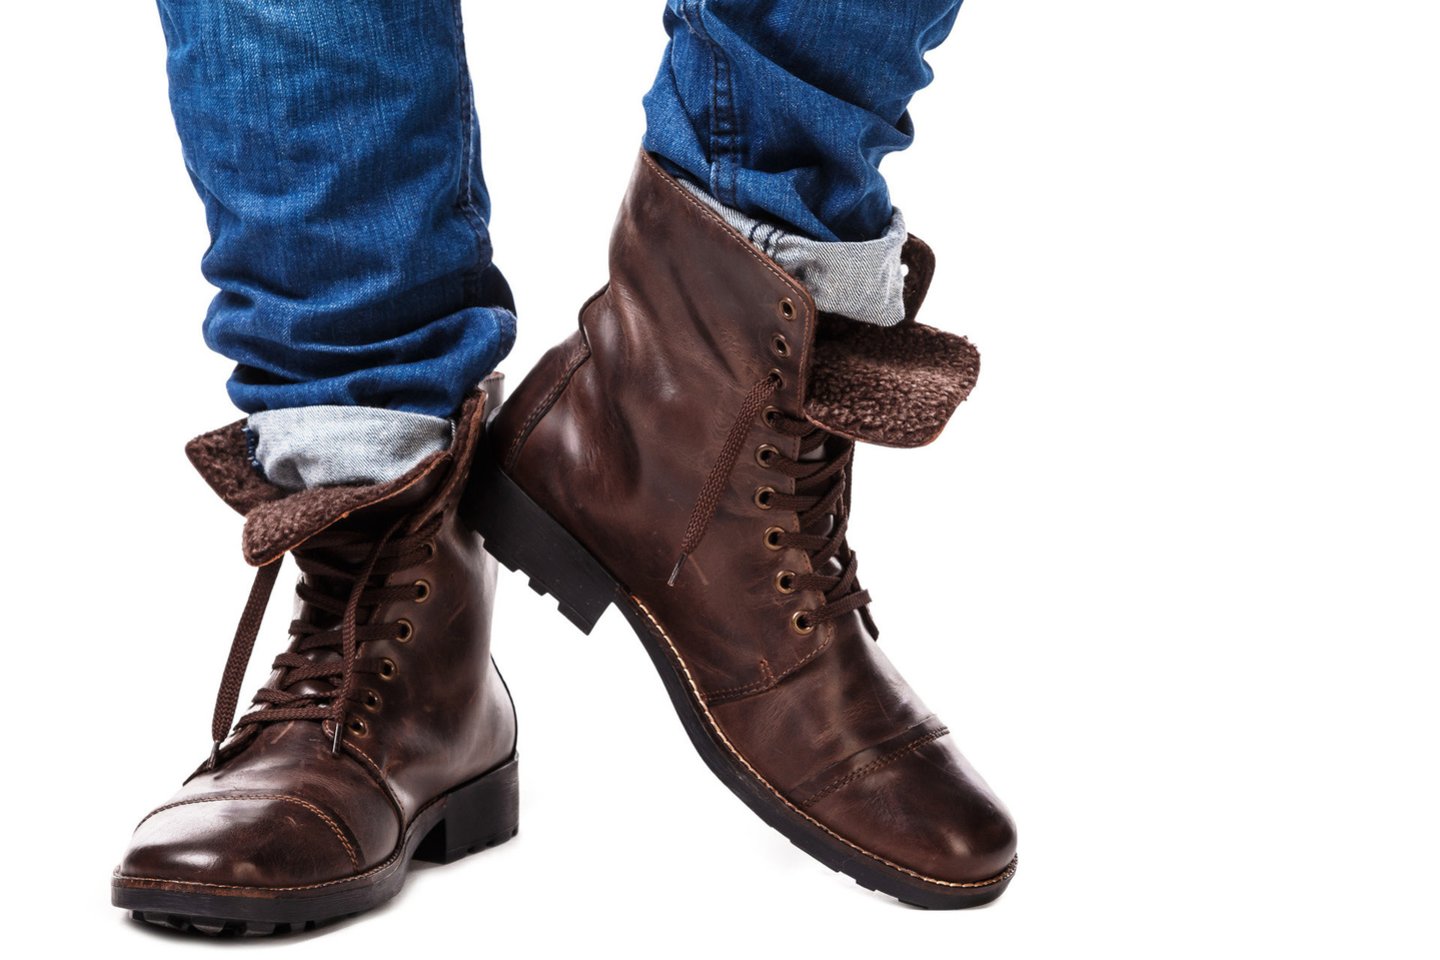  Jei norisi grubesnio, bet vis dar modernaus stiliaus, rinkitės tamsiai rudus batus.<br> 123rf nuotr.